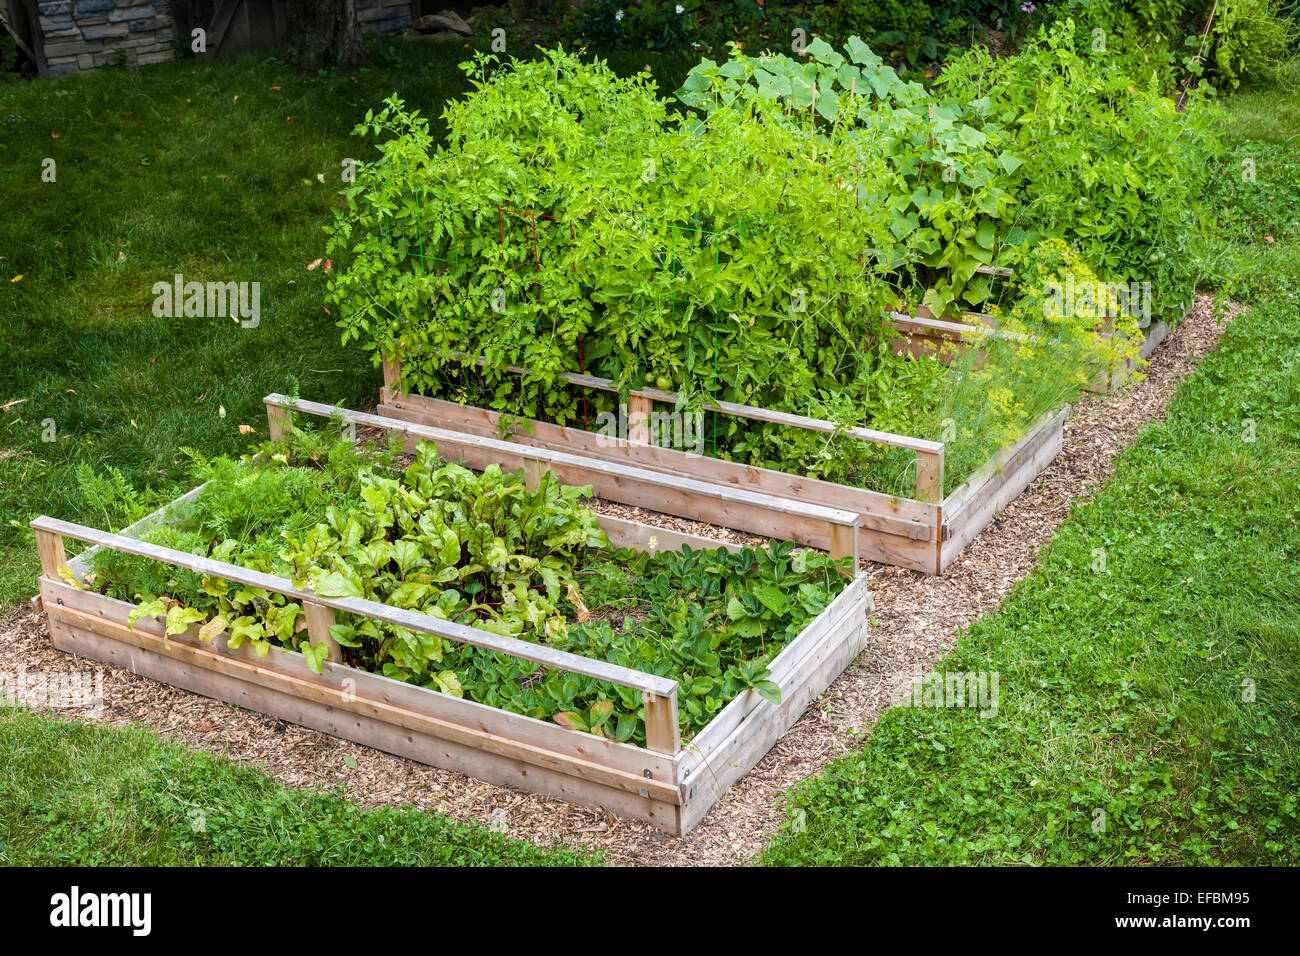 Drei Hochbeete Garten Anbau von frischem Gemüse in einem Hinterhof Stockfoto